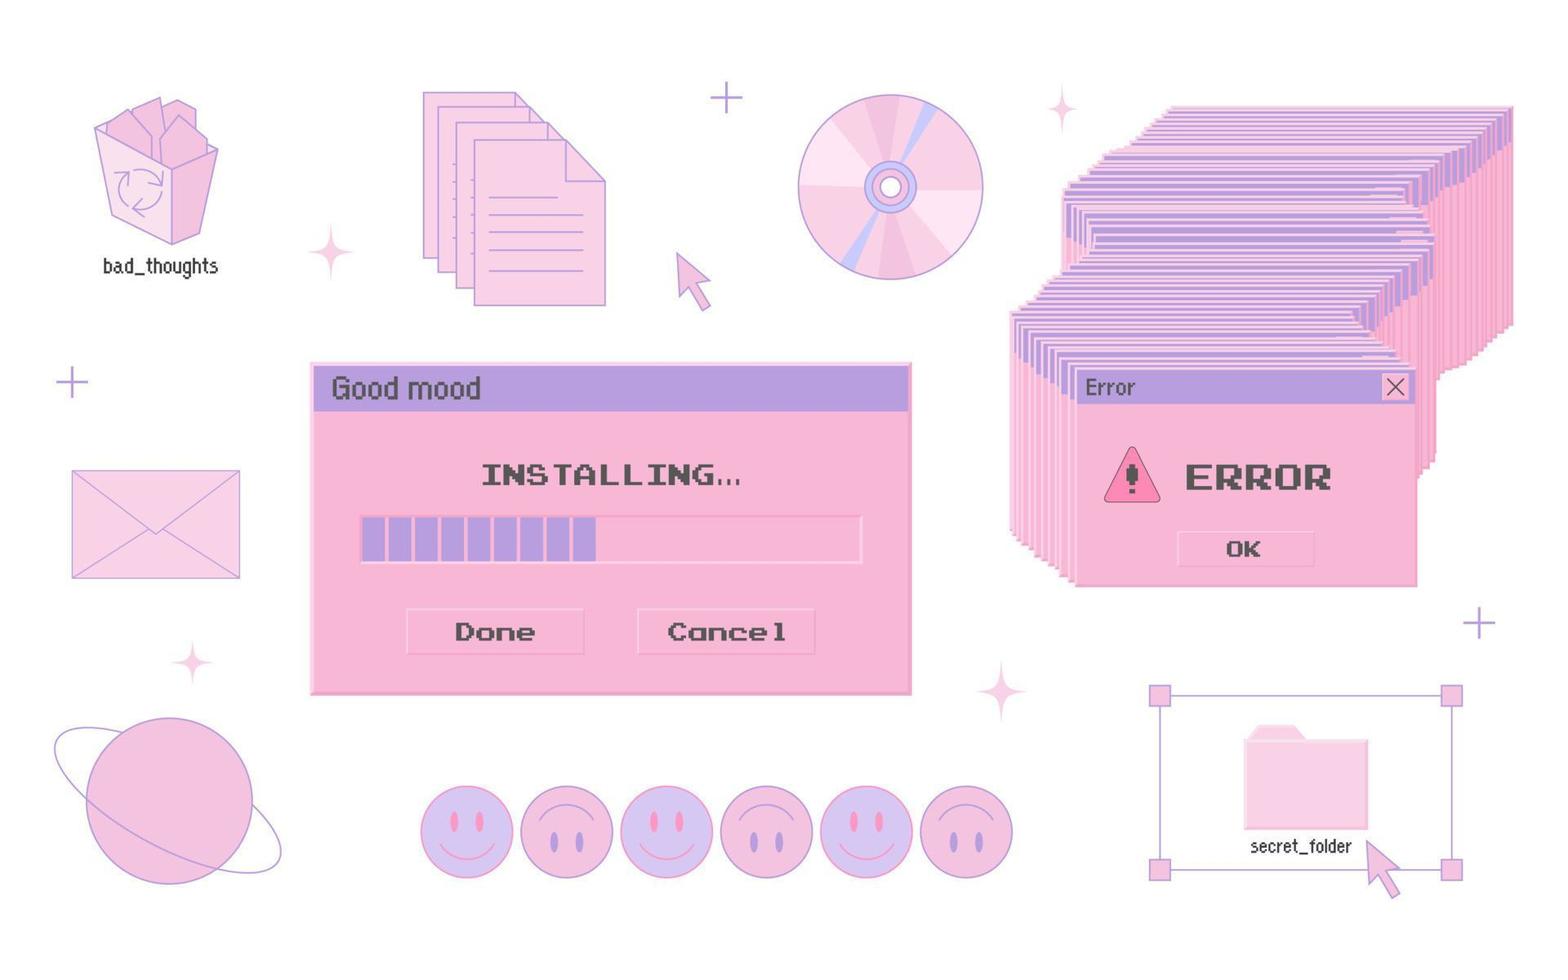 interfaz de usuario de computadora antigua, estilo de los años 90 2000, elementos de PC retro, conjunto estético y2k de moda, nostalgia, ilustración vectorial vector